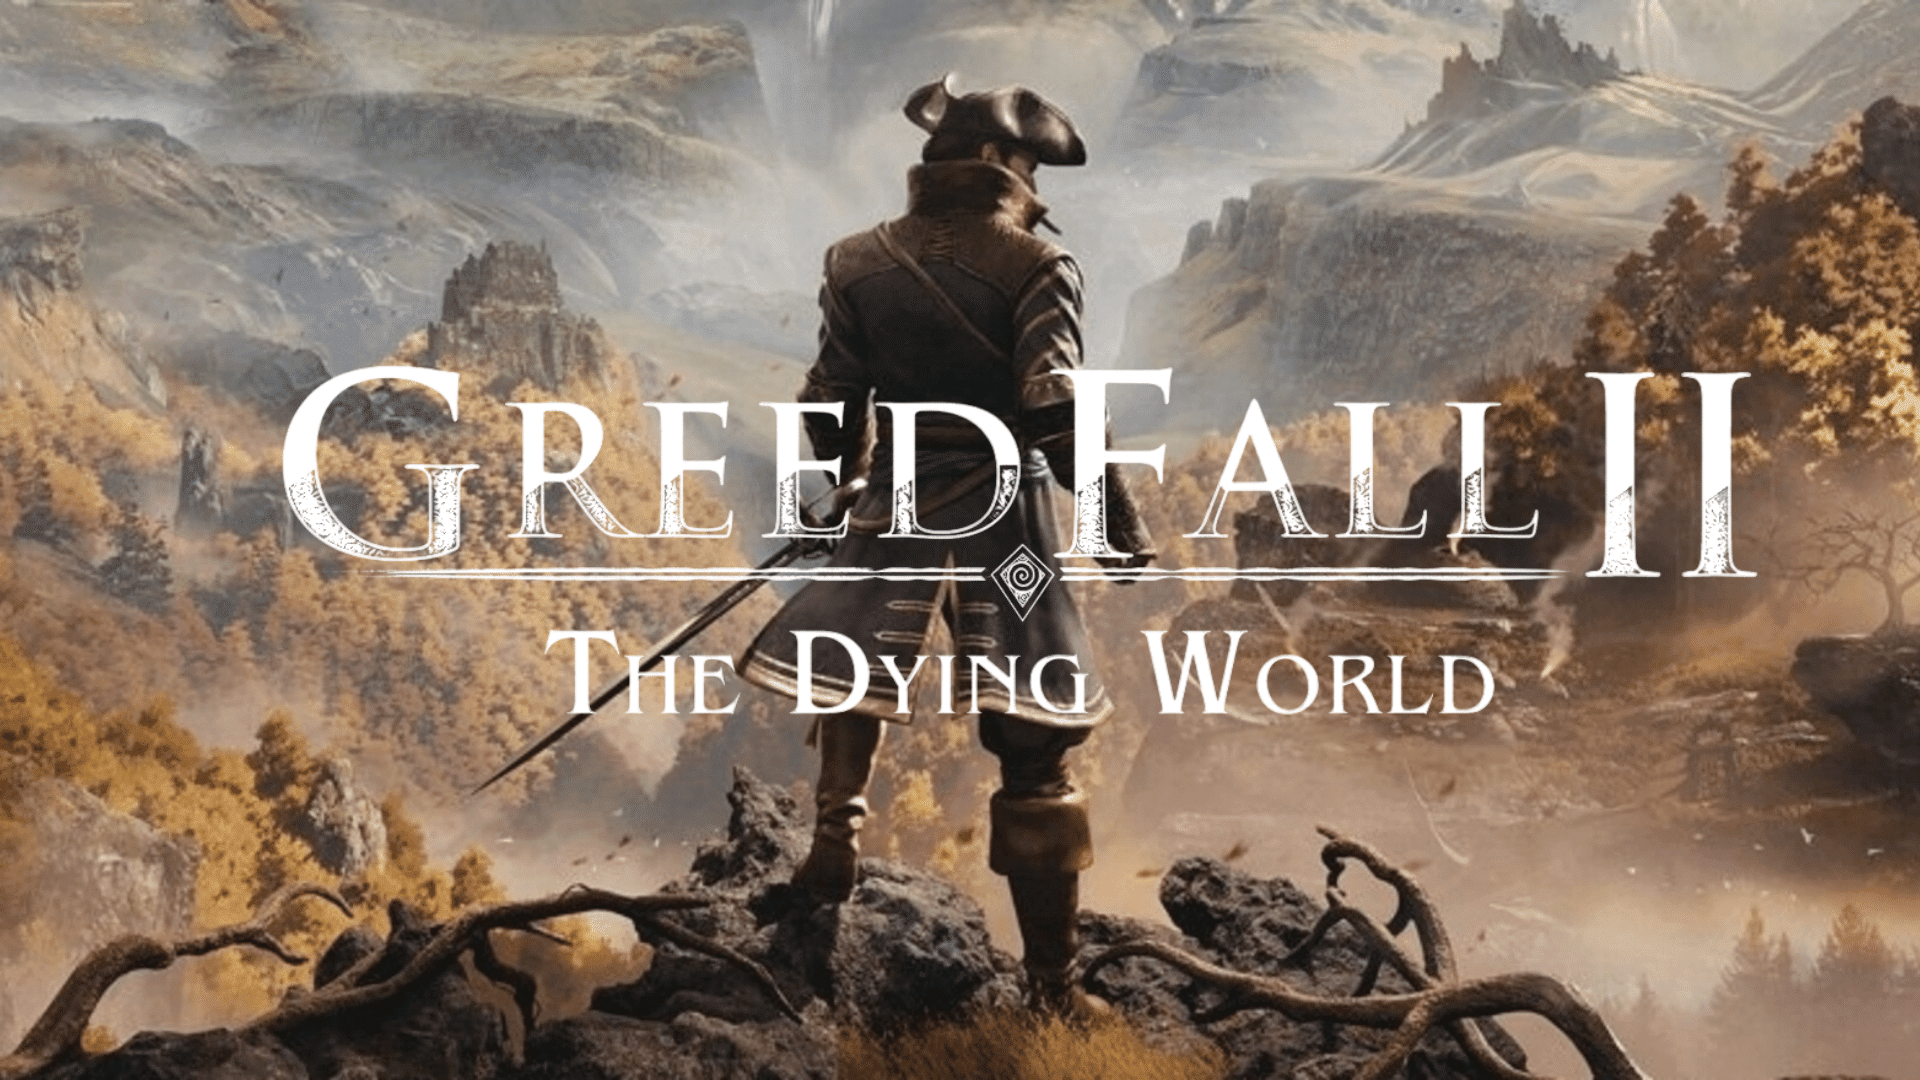 Los desarrolladores de GreedFall 2: The Dying World han revelado nuevos detalles sobre el juego: "más posibilidades románticas" y posibles cameos de la parte anterior del juego.